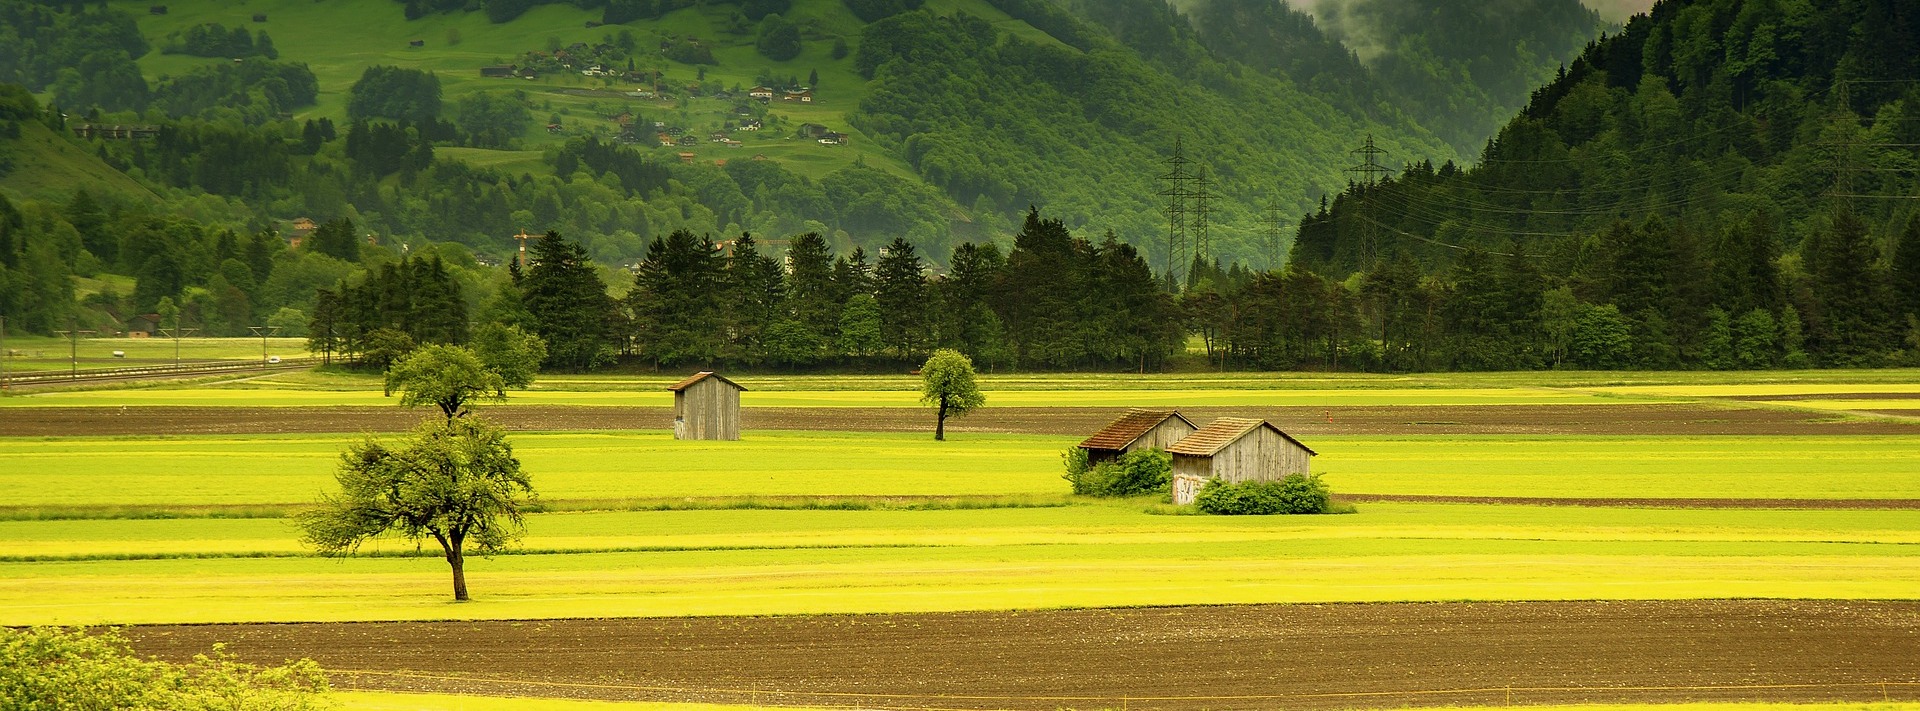 field landscape